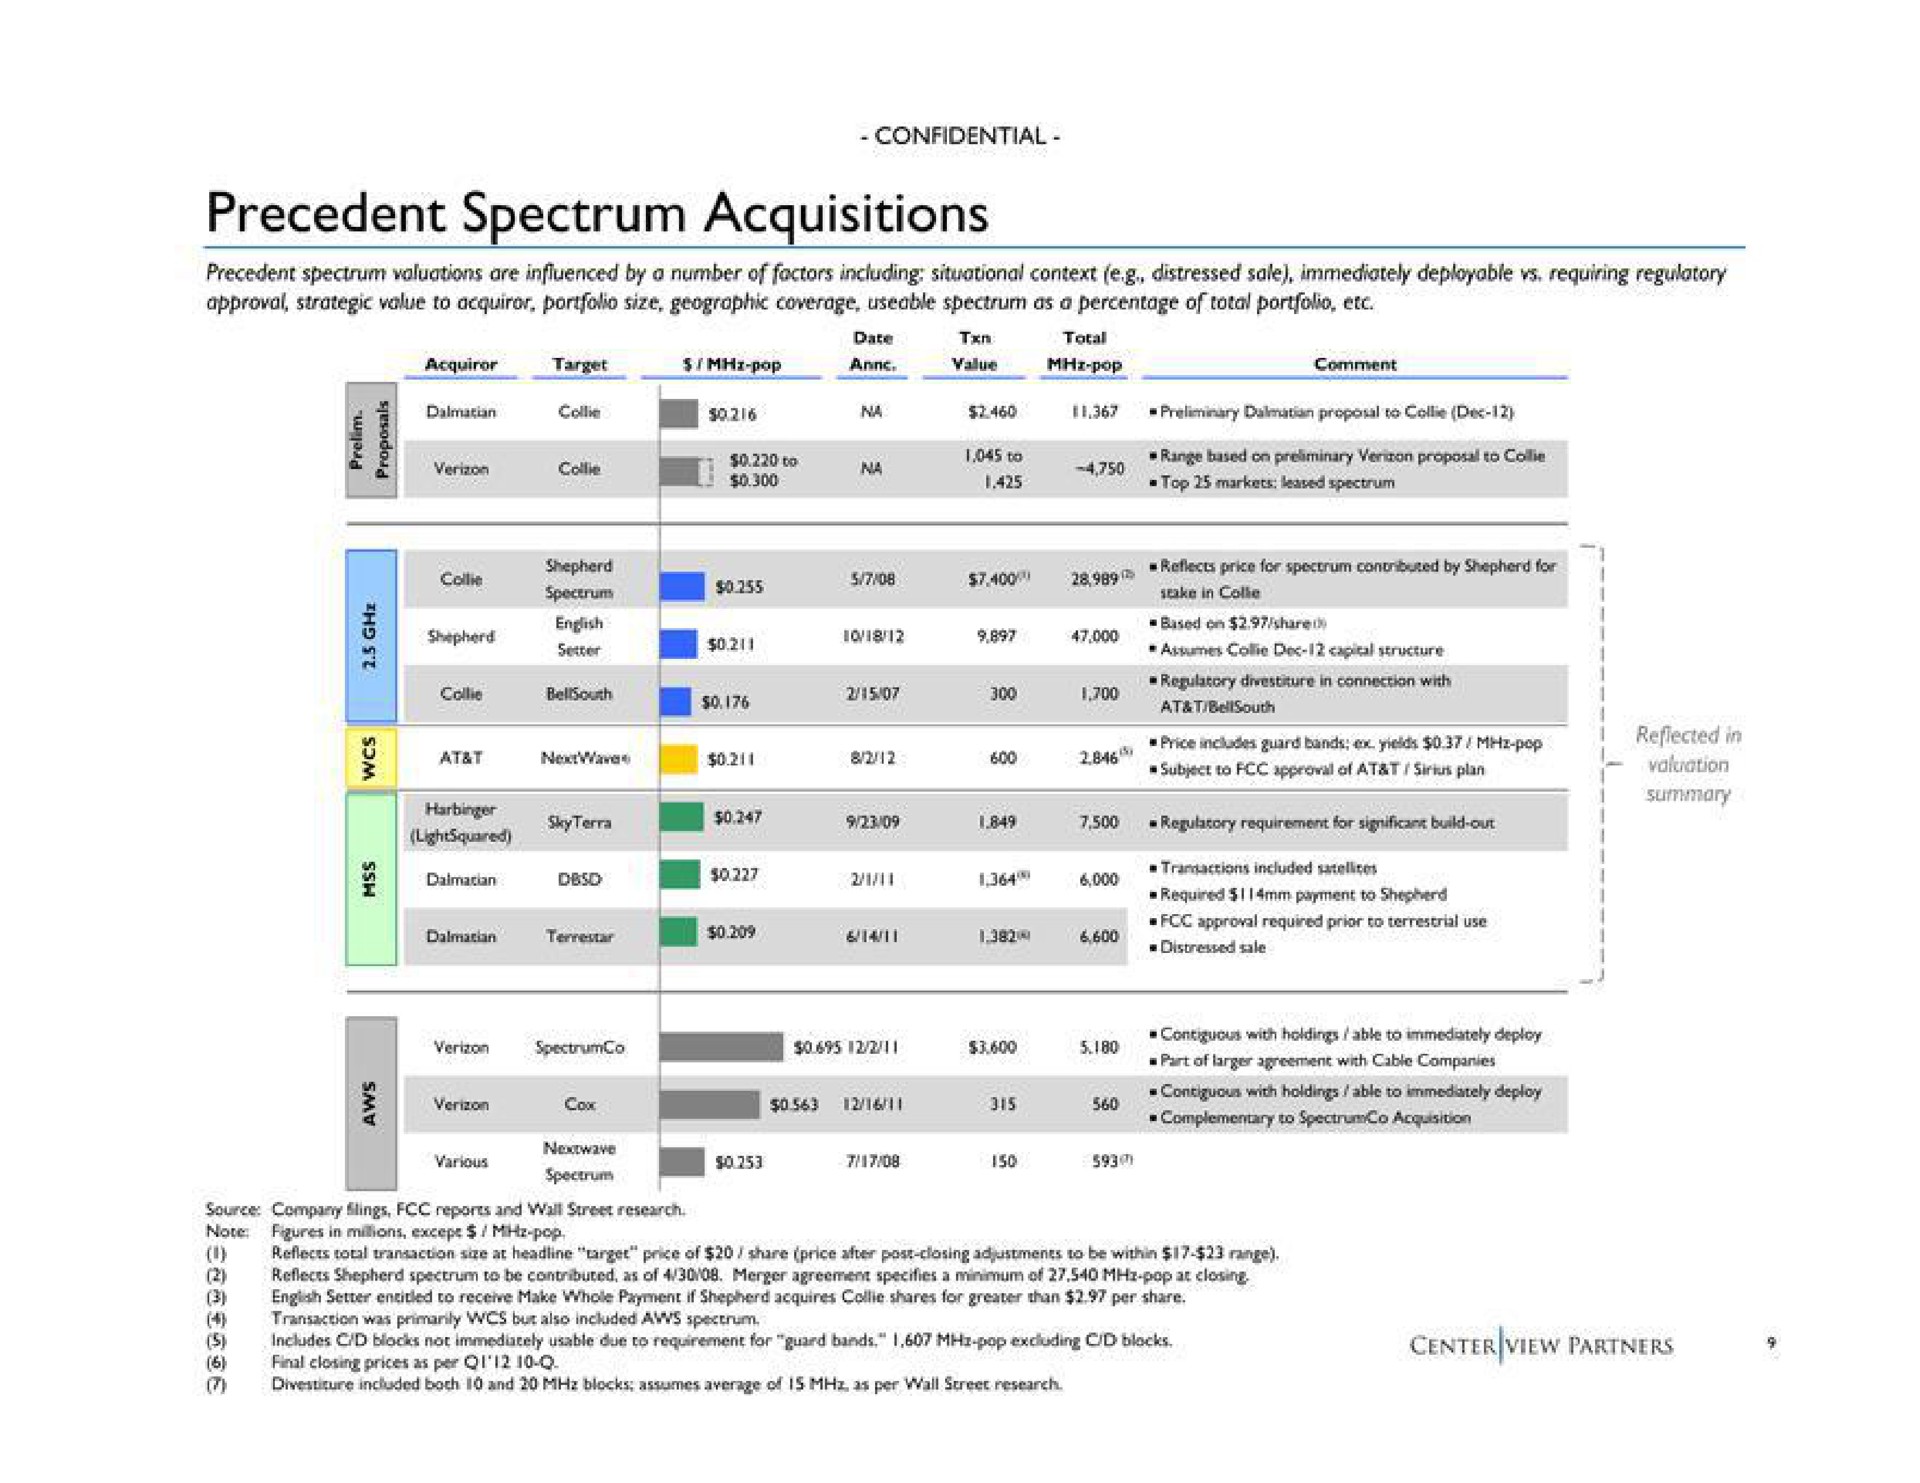 precedent spectrum acquisitions i | Centerview Partners